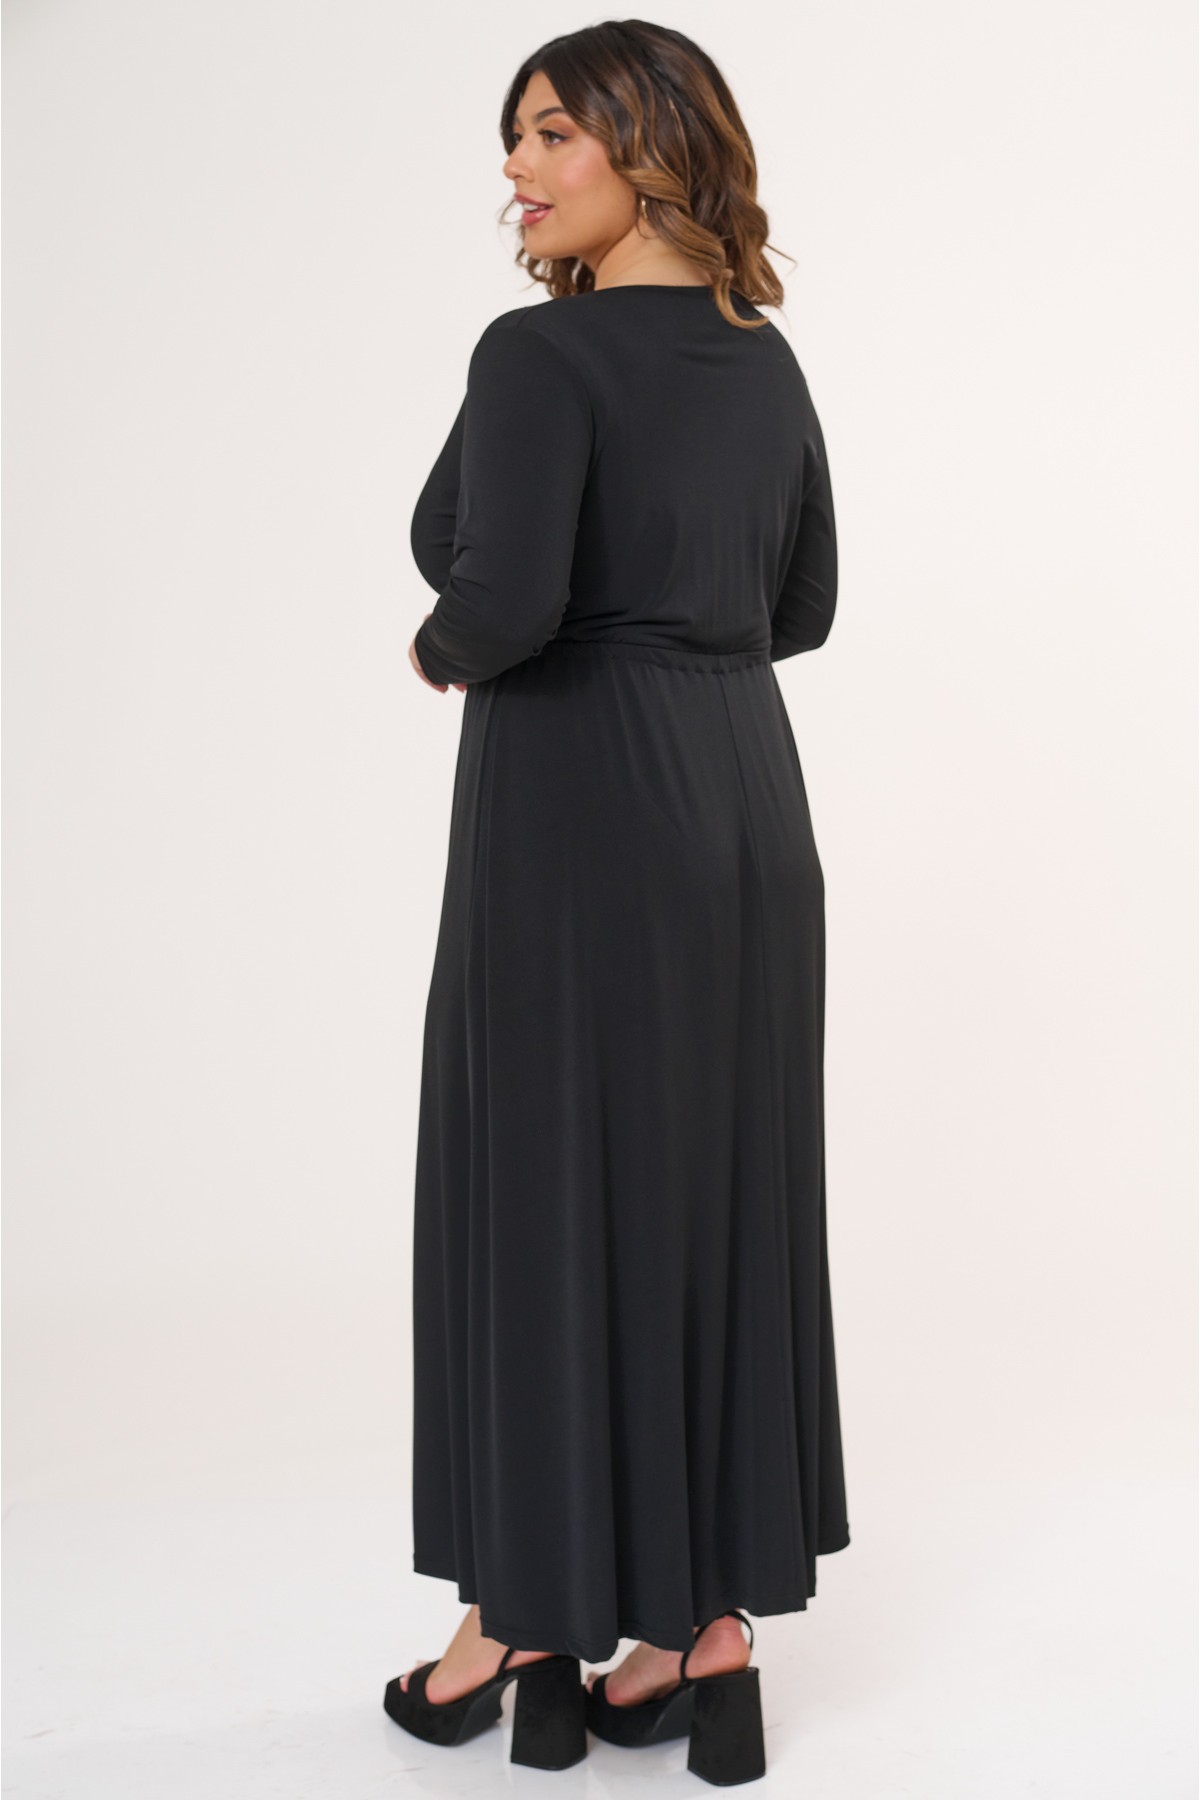 Φόρεμα μάξι μακρύ μανίκι κρουαζέ μαύρο